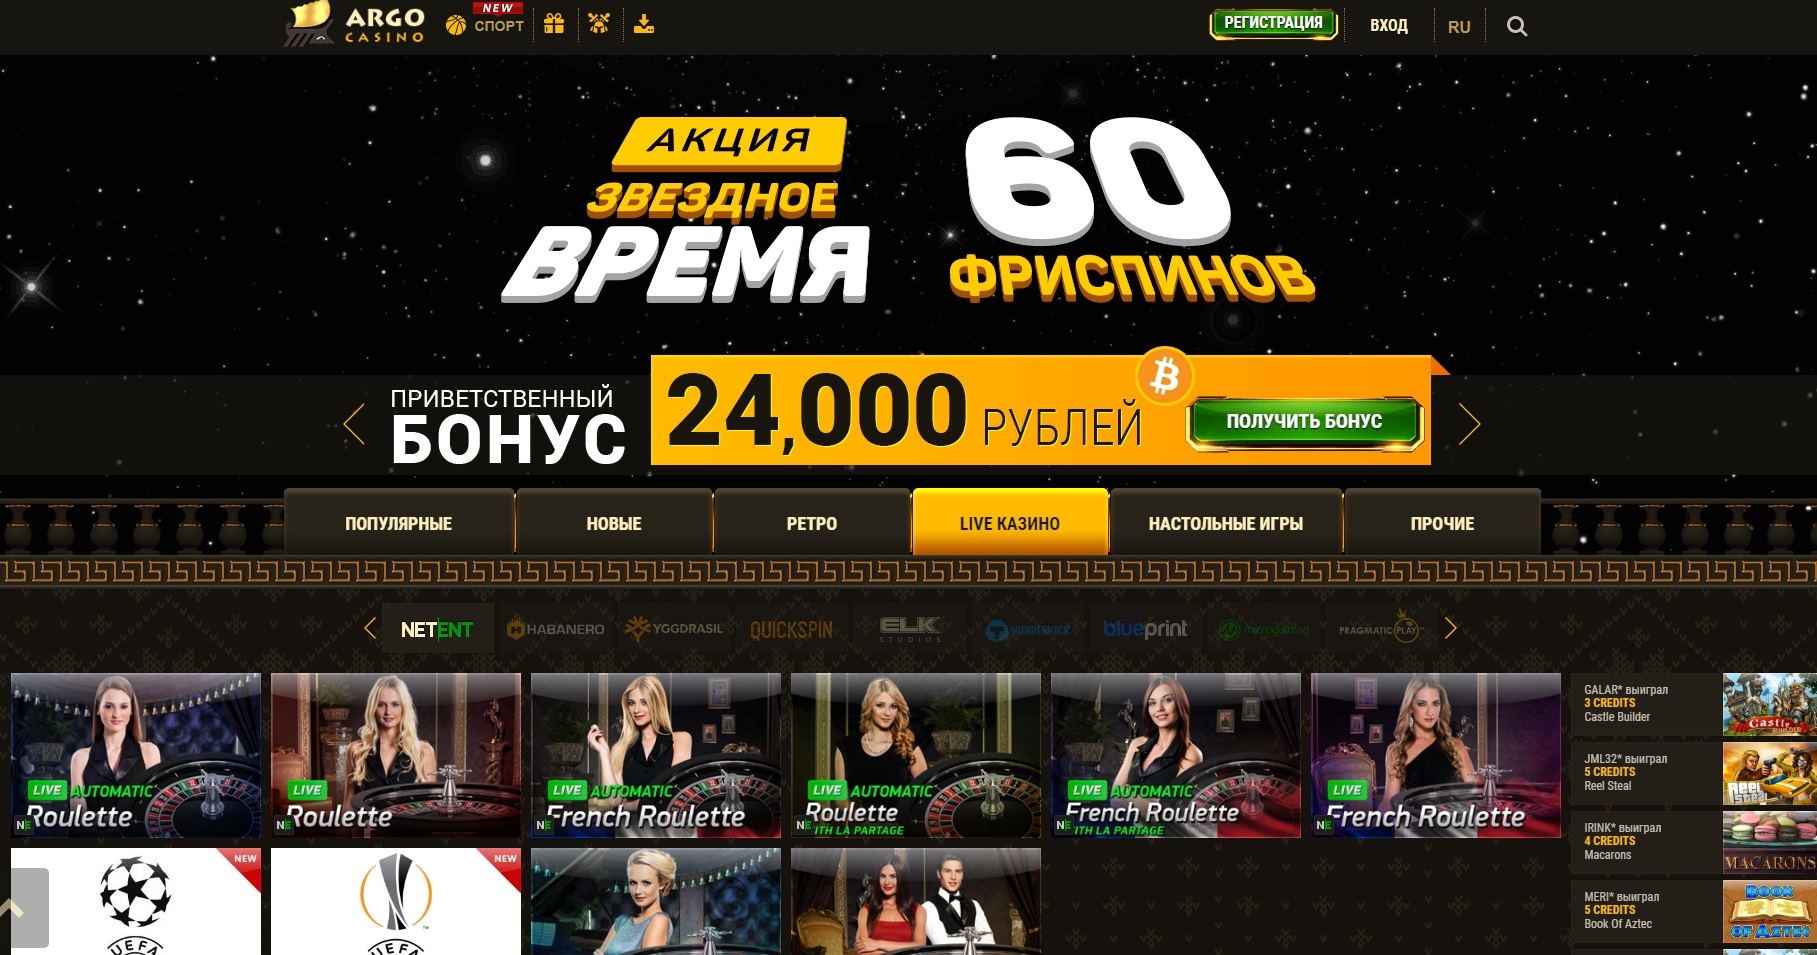 Бонусы онлайн казино 2017 azino777 бонус 777 рублей депозита за регистрацию официальный сайт